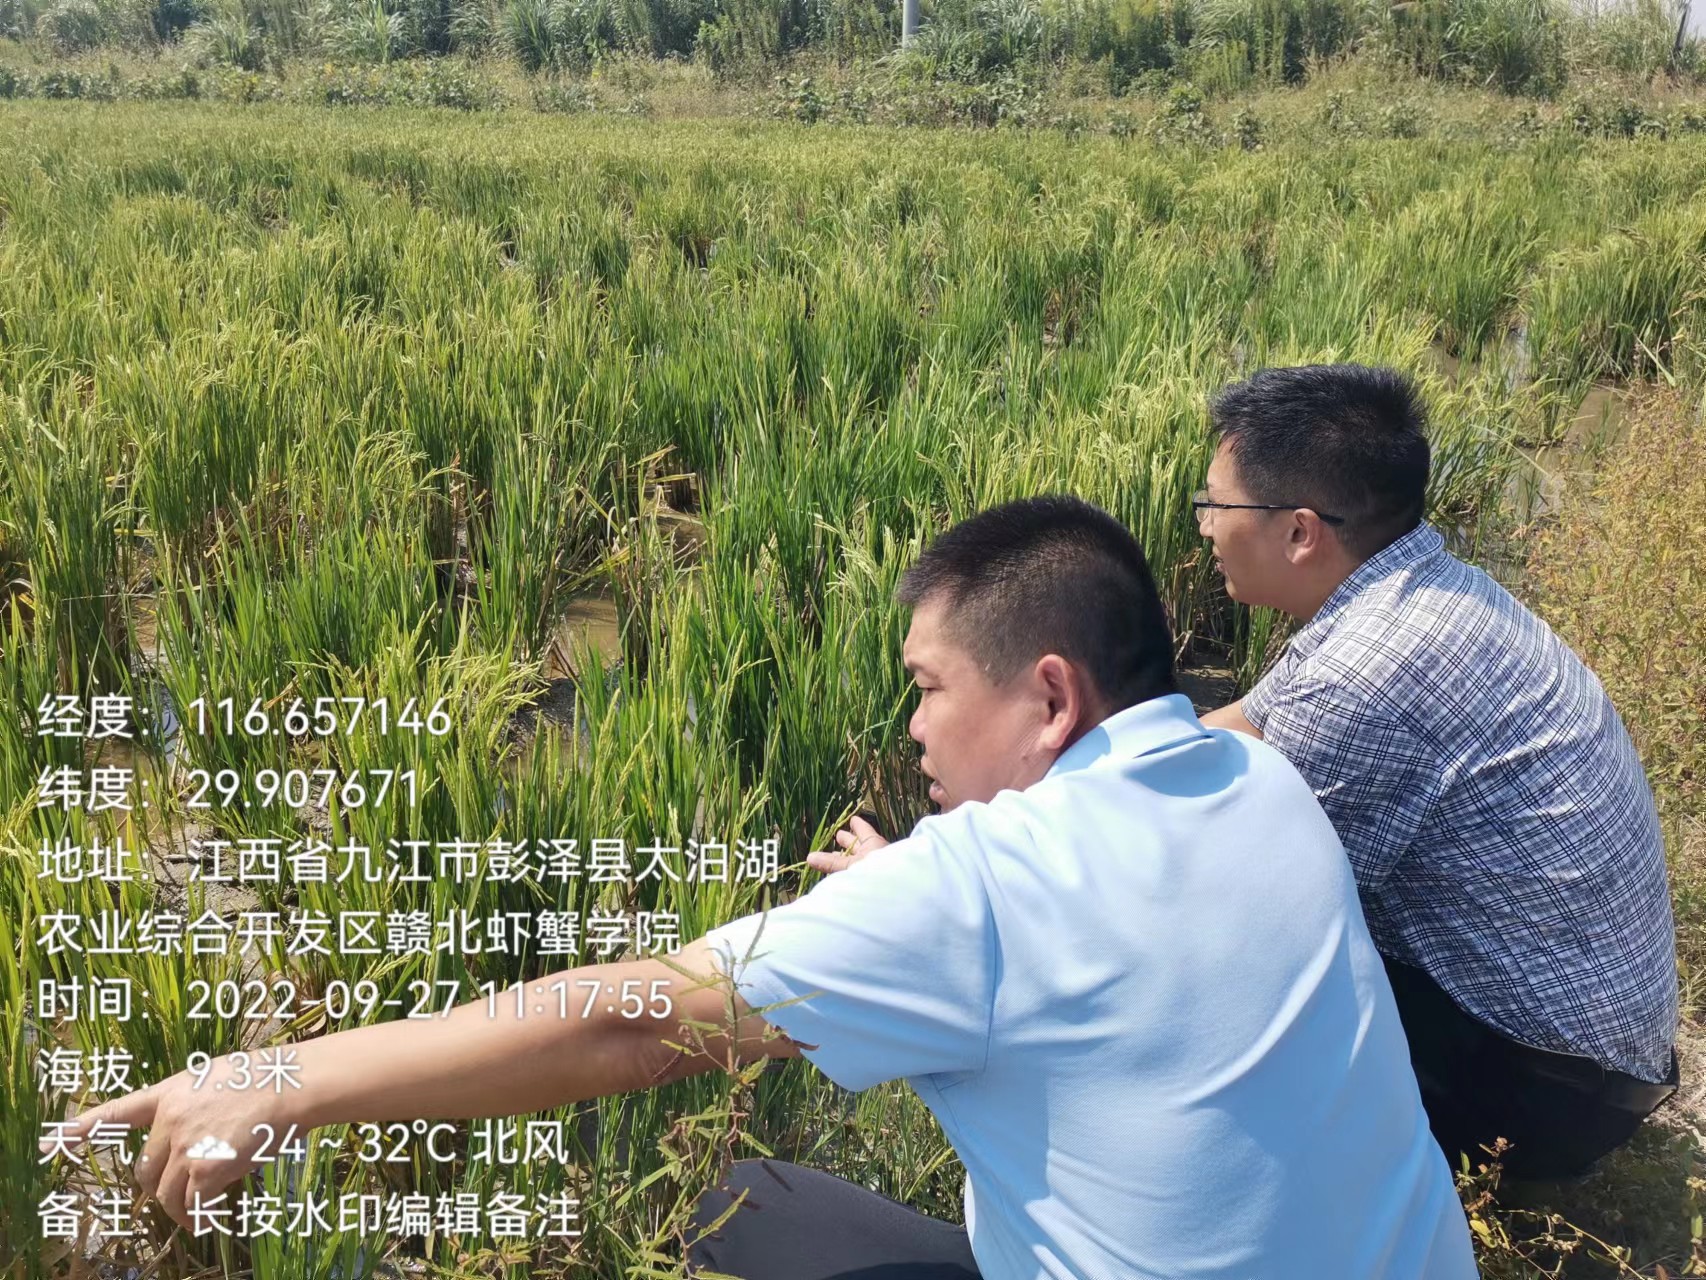 支部党员彭扣同志赴彭泽县开展农业抗旱救灾保供工作。